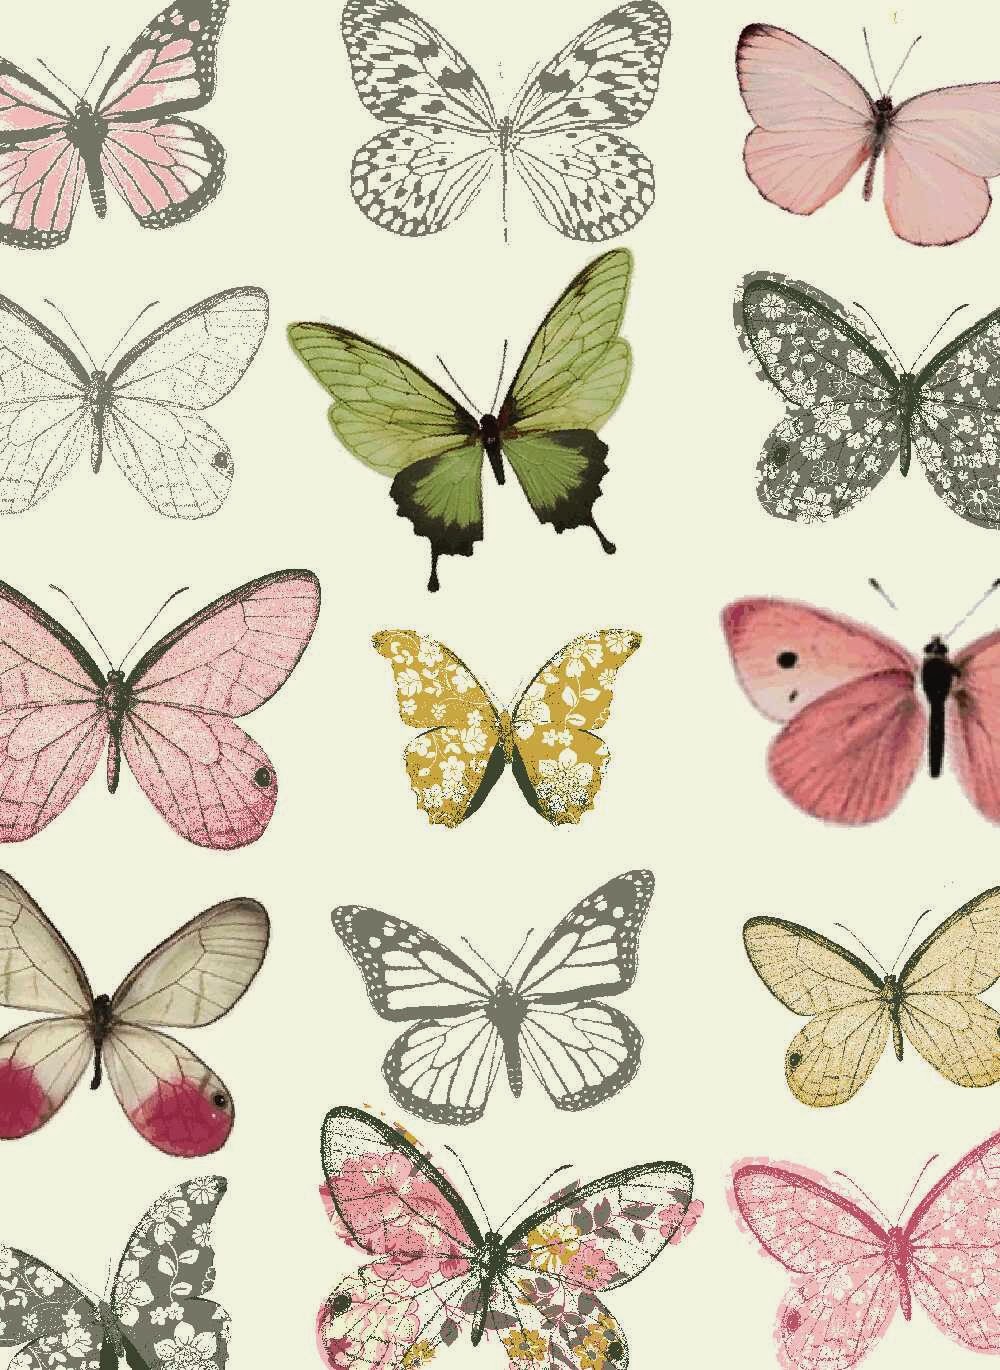 壁紙蝶デザイン,蛾と蝶,バタフライ,シンシア亜属,昆虫,無脊椎動物